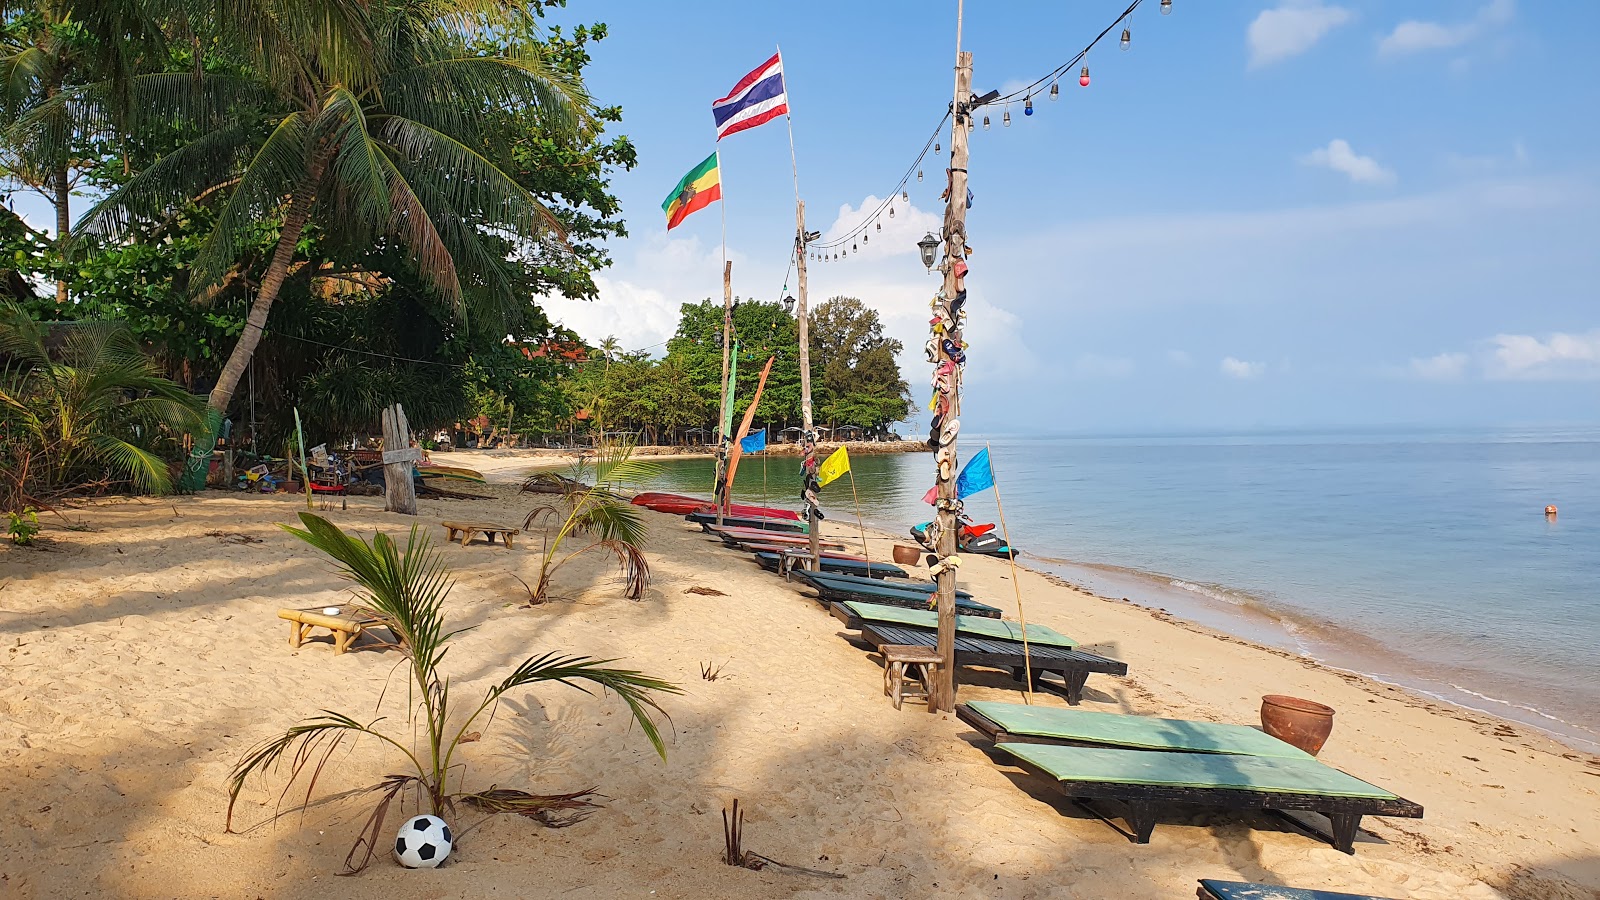 Foto af Bang Por Beach - populært sted blandt afslapningskendere